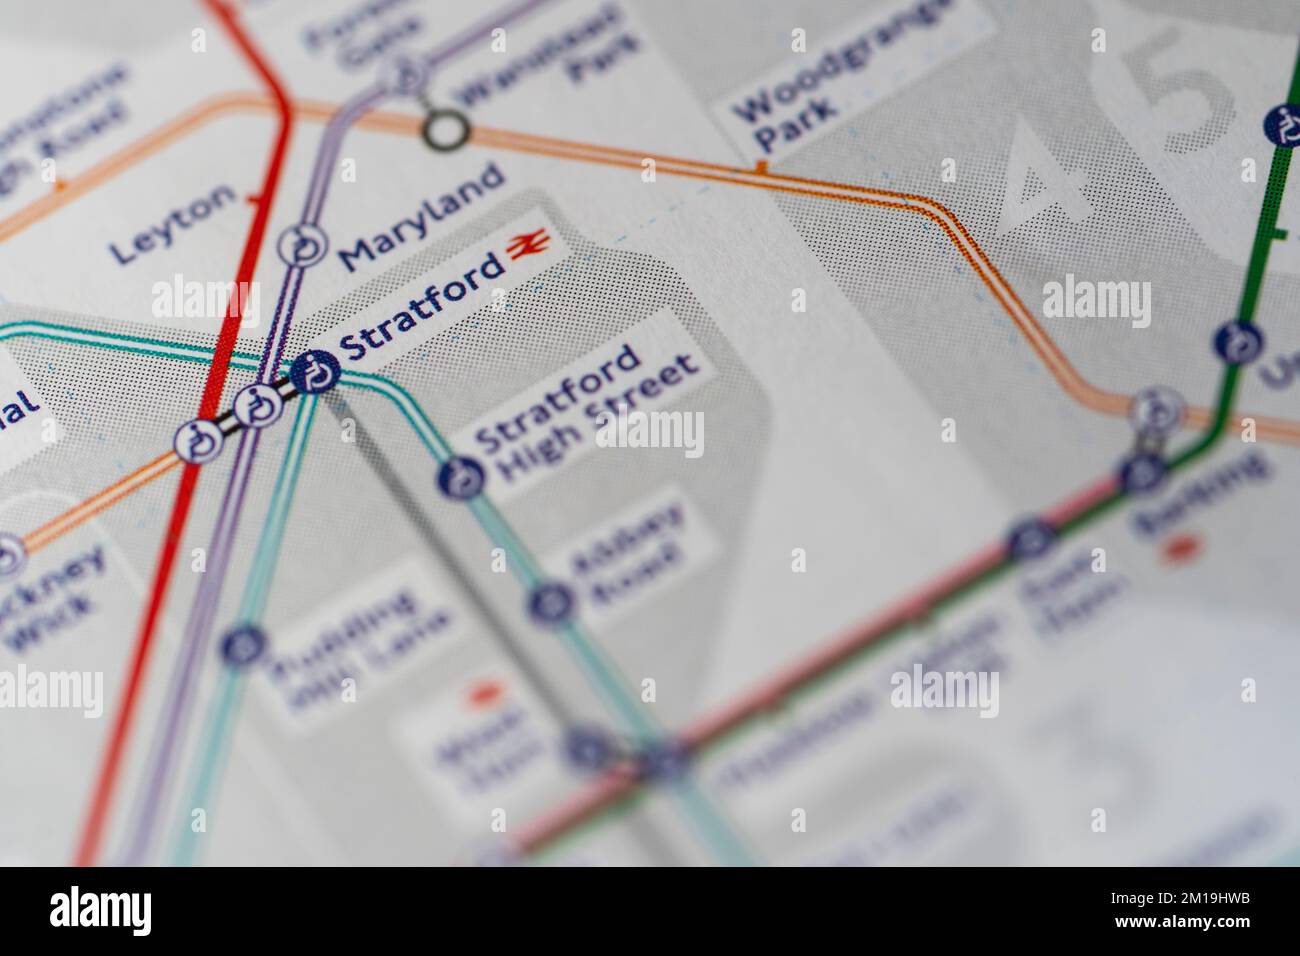 Macro primer plano con una profundidad de campo poco profunda de un mapa de metro de Londres que muestra las zonas y la estación de tren y metro de Stratford Foto de stock